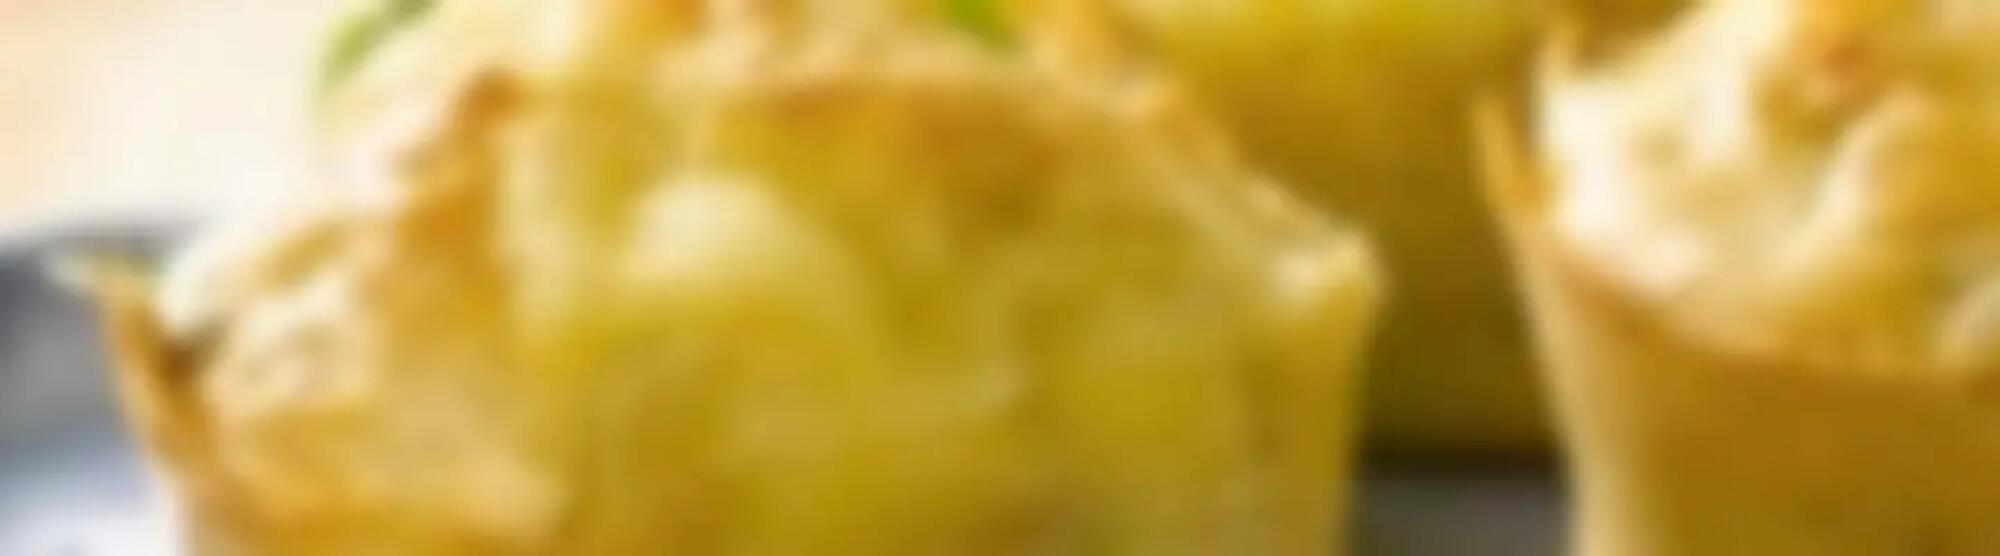 Recette : Muffins salés au fromage